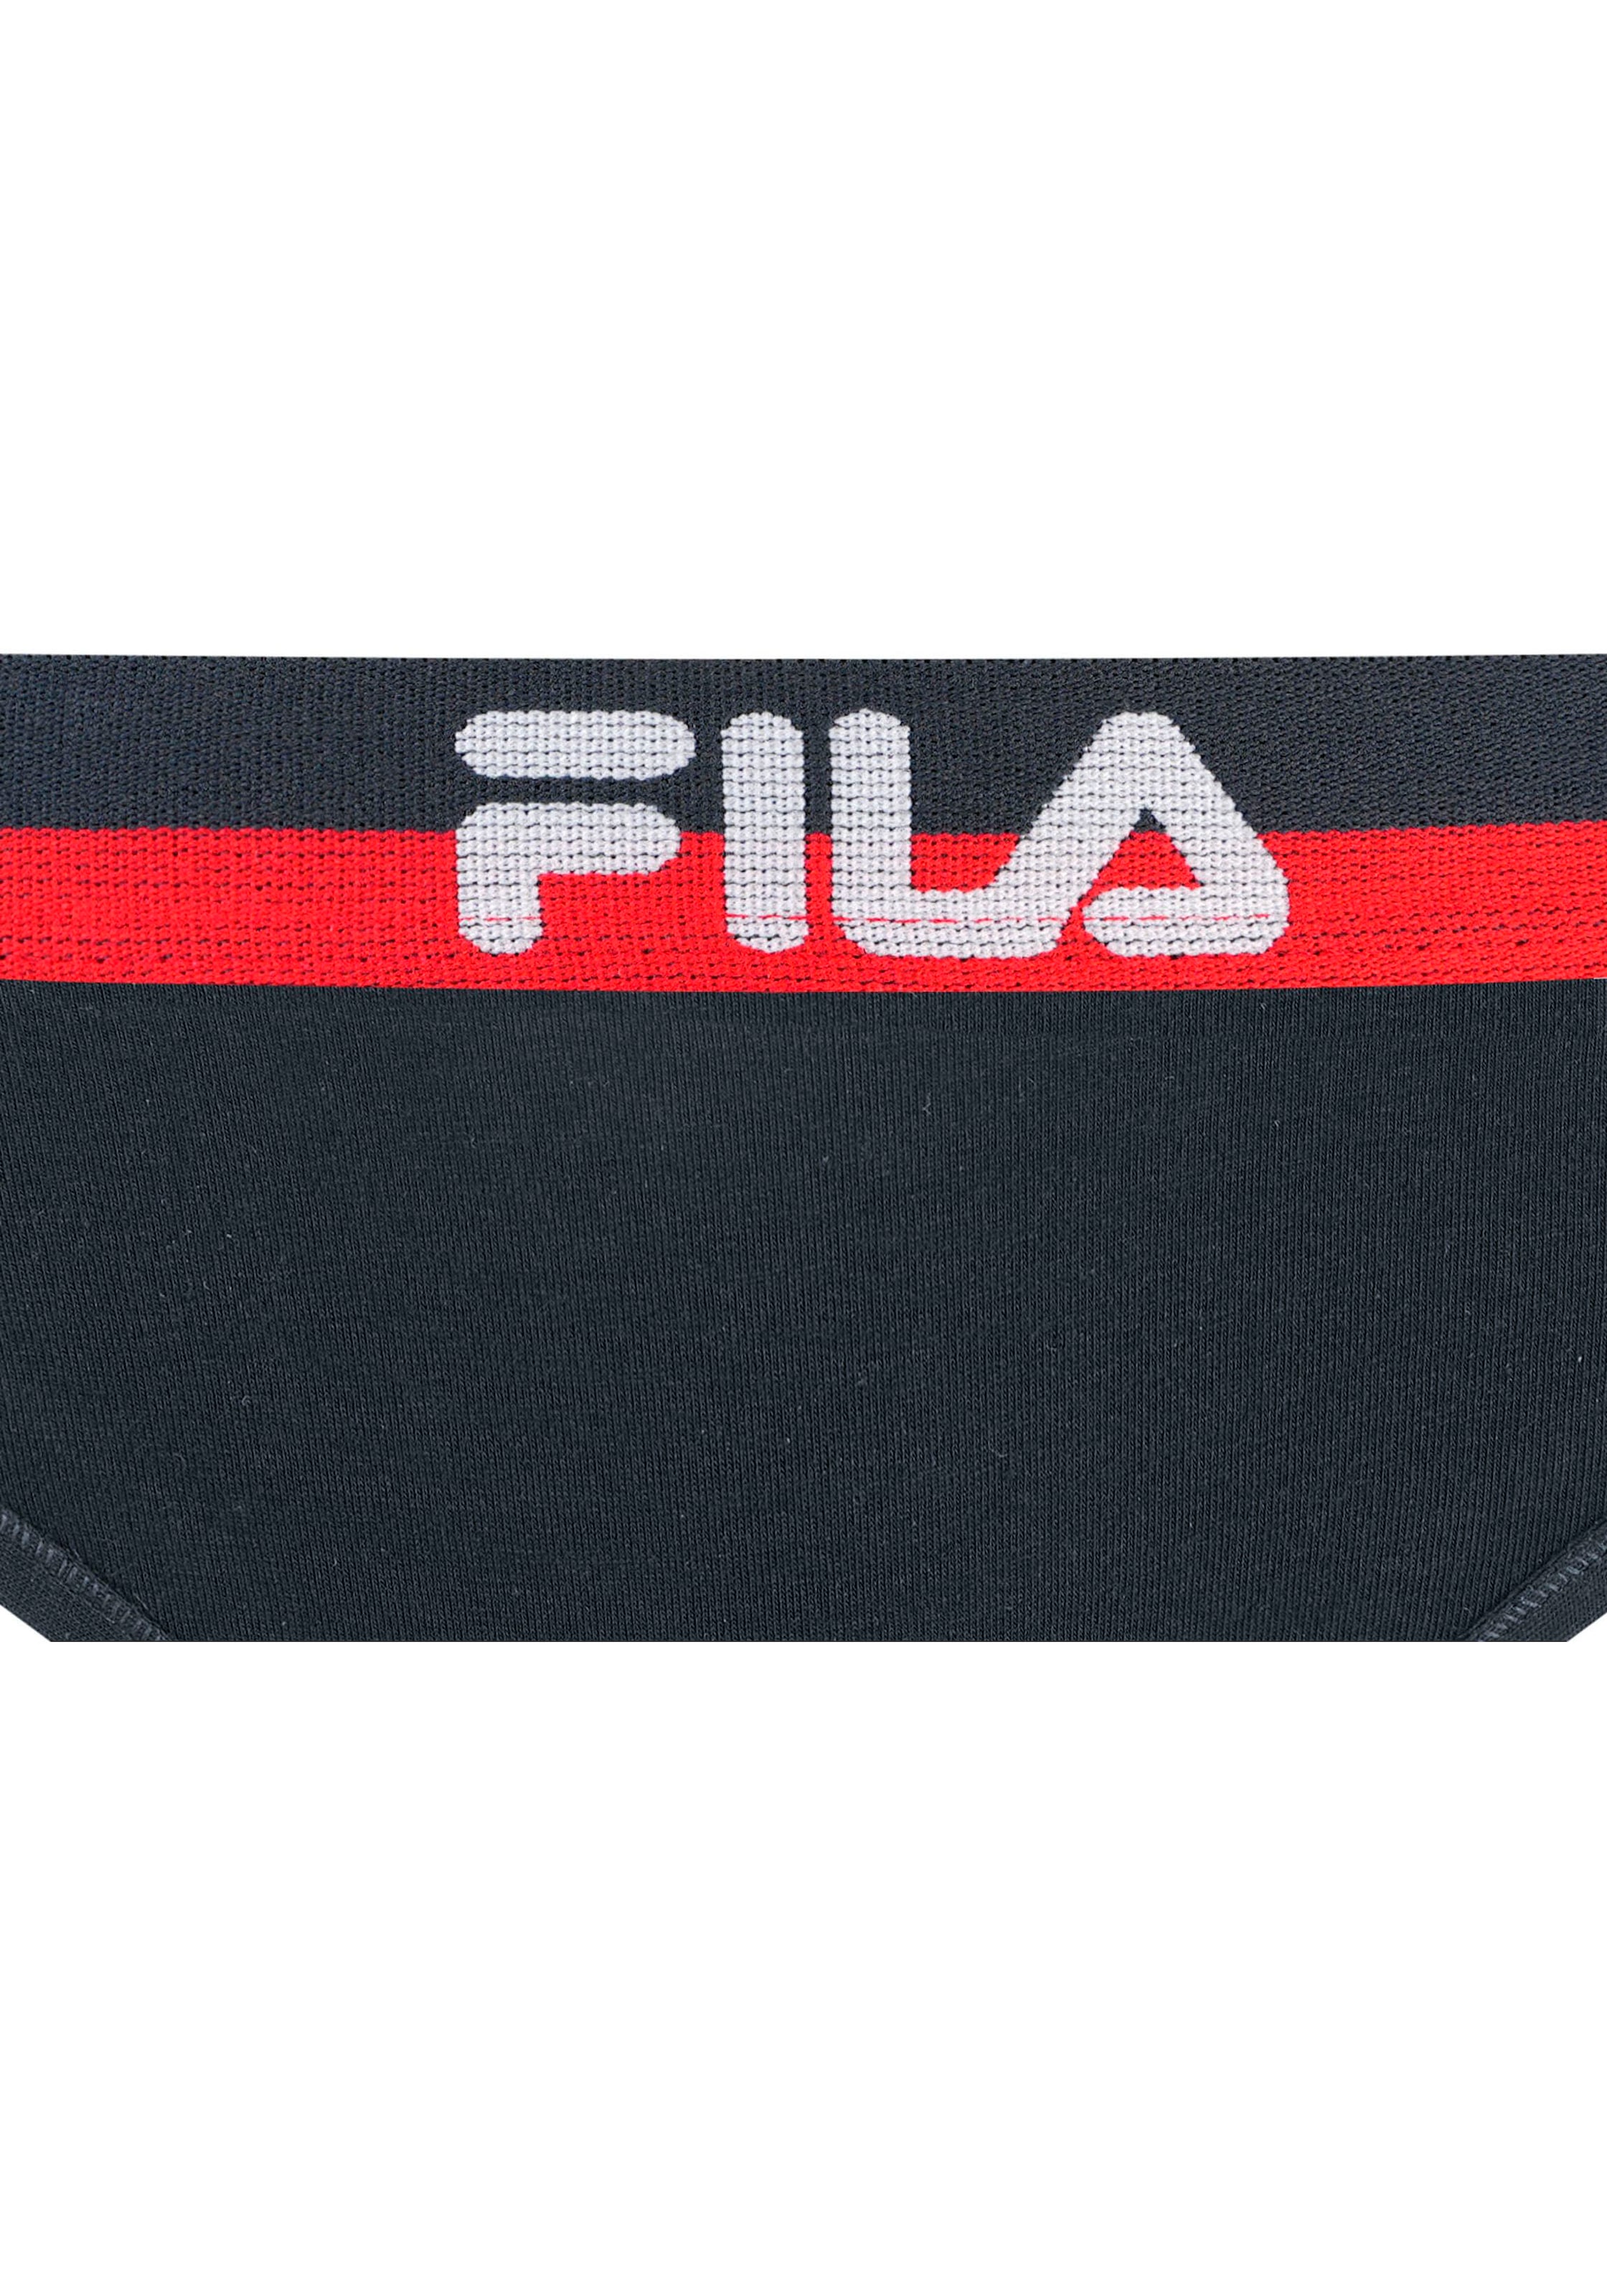 Fila Slip, (Packung, 3 St.), mit elastischem Logobund, Woman Culotte